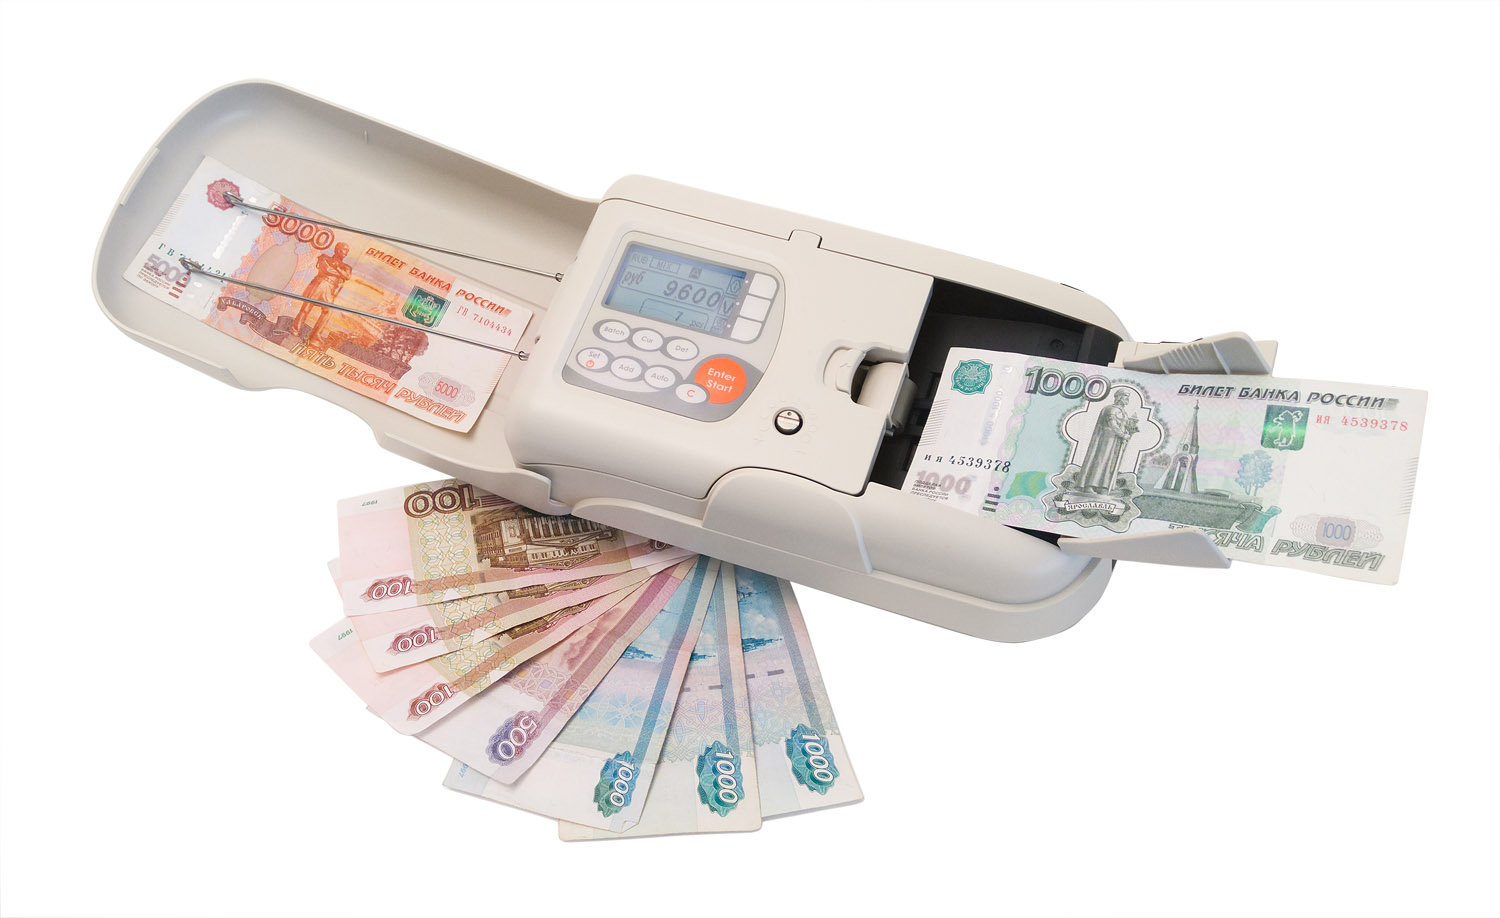 Детектор-сортировщик банкнот (валют) PRO NC 1100 изображение